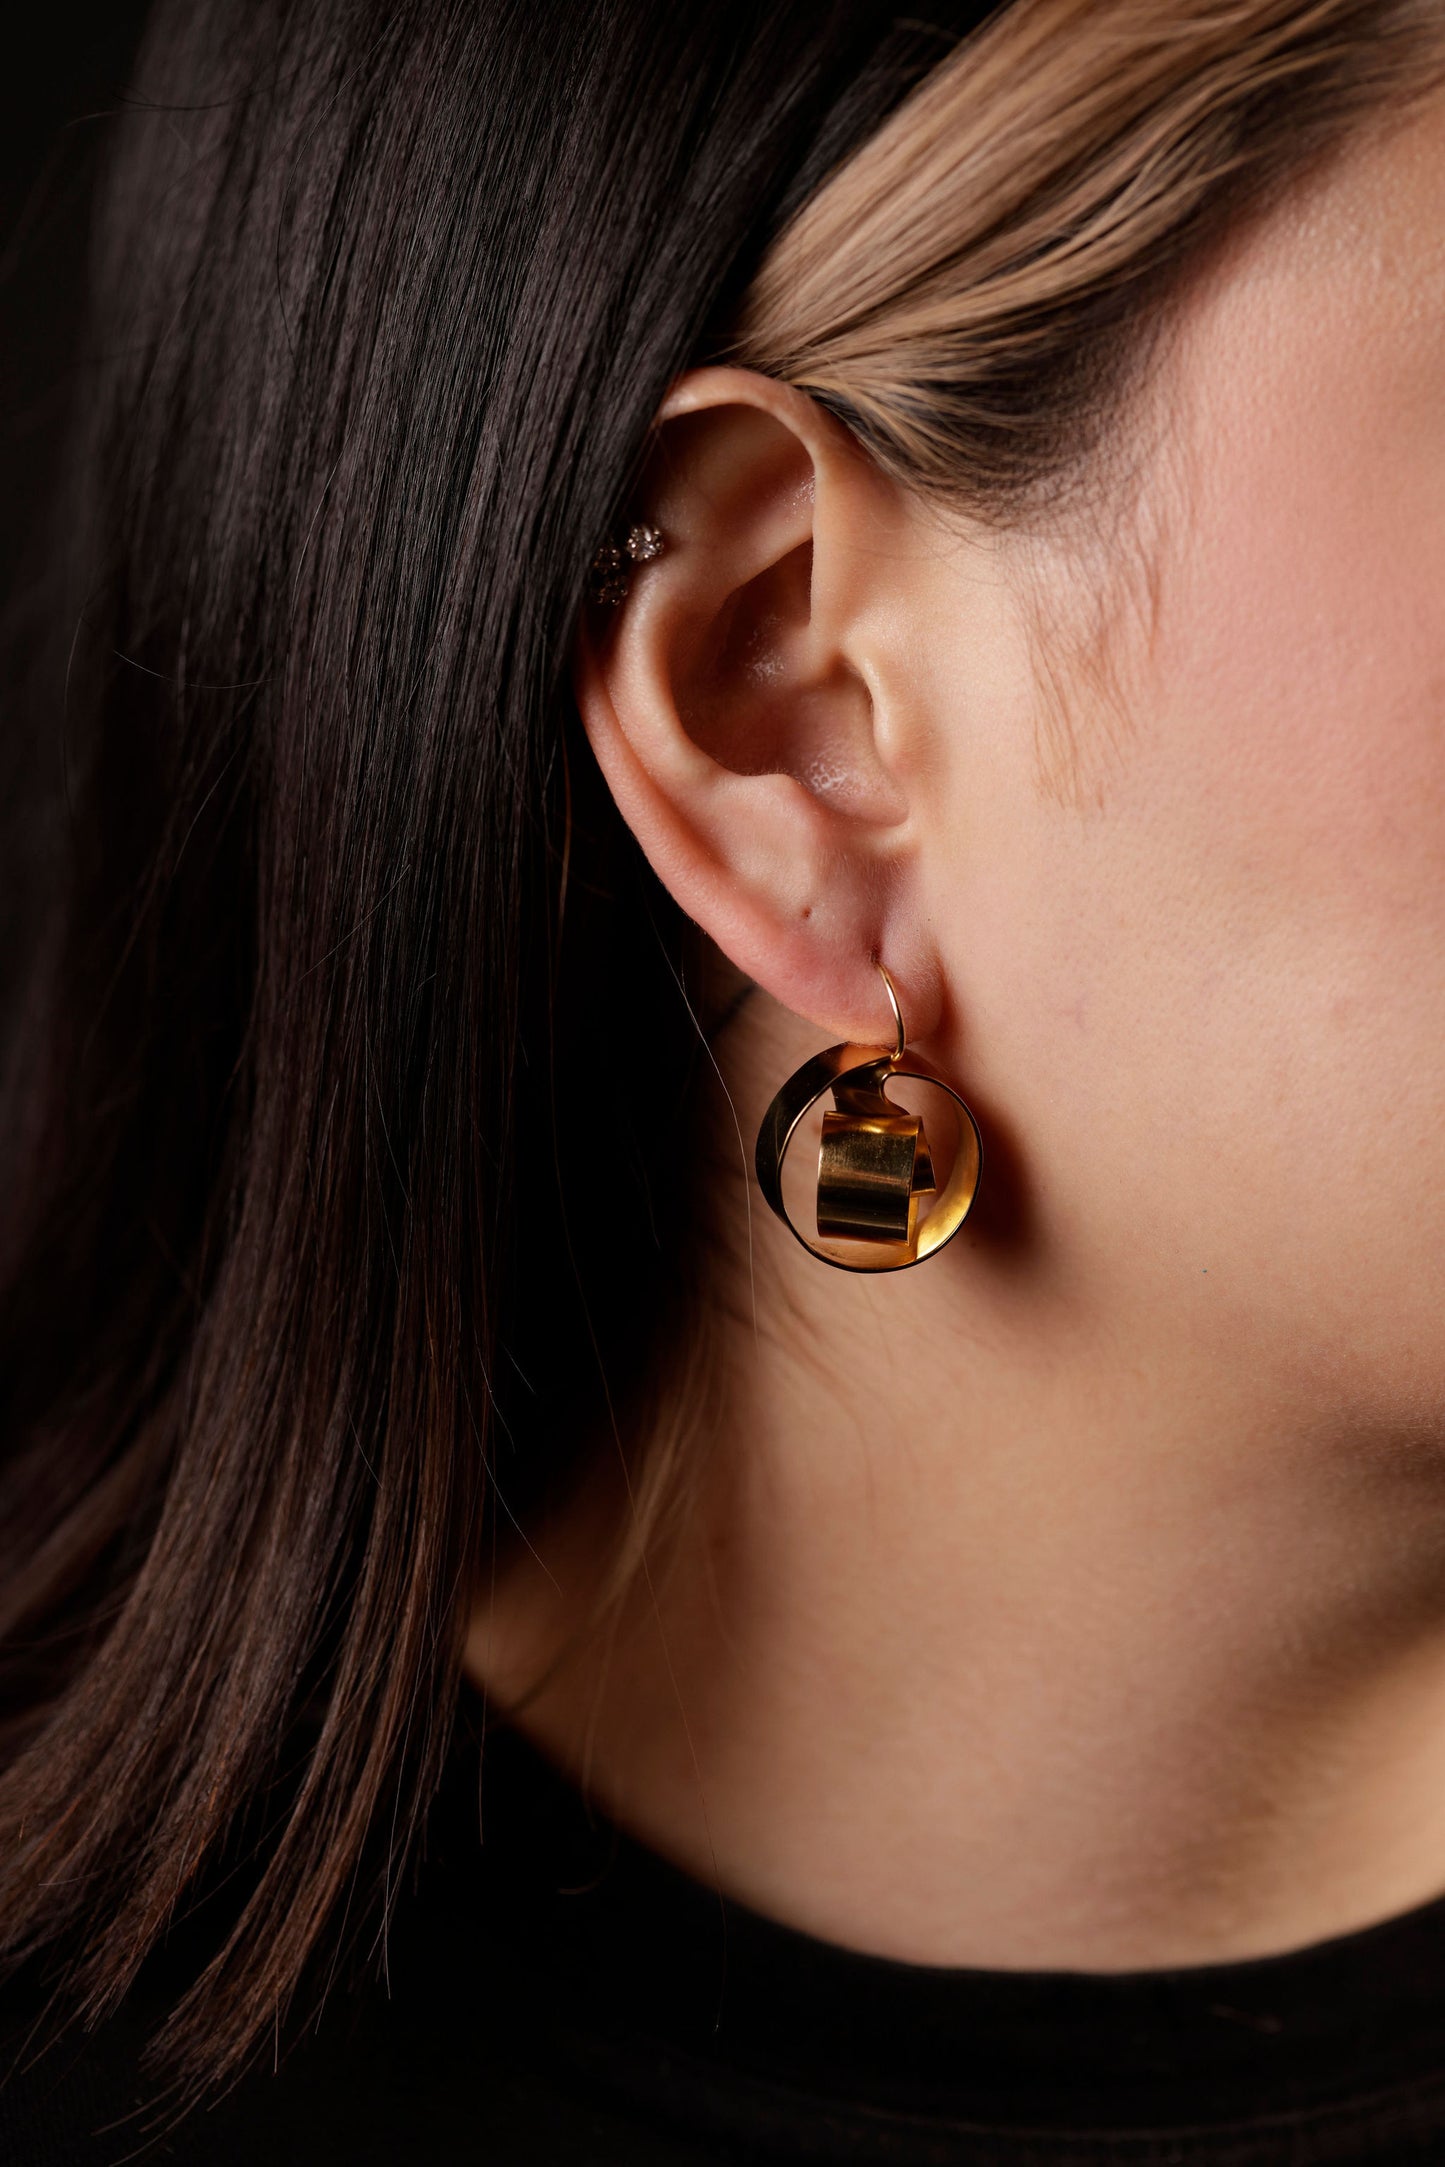 drop earrings on model